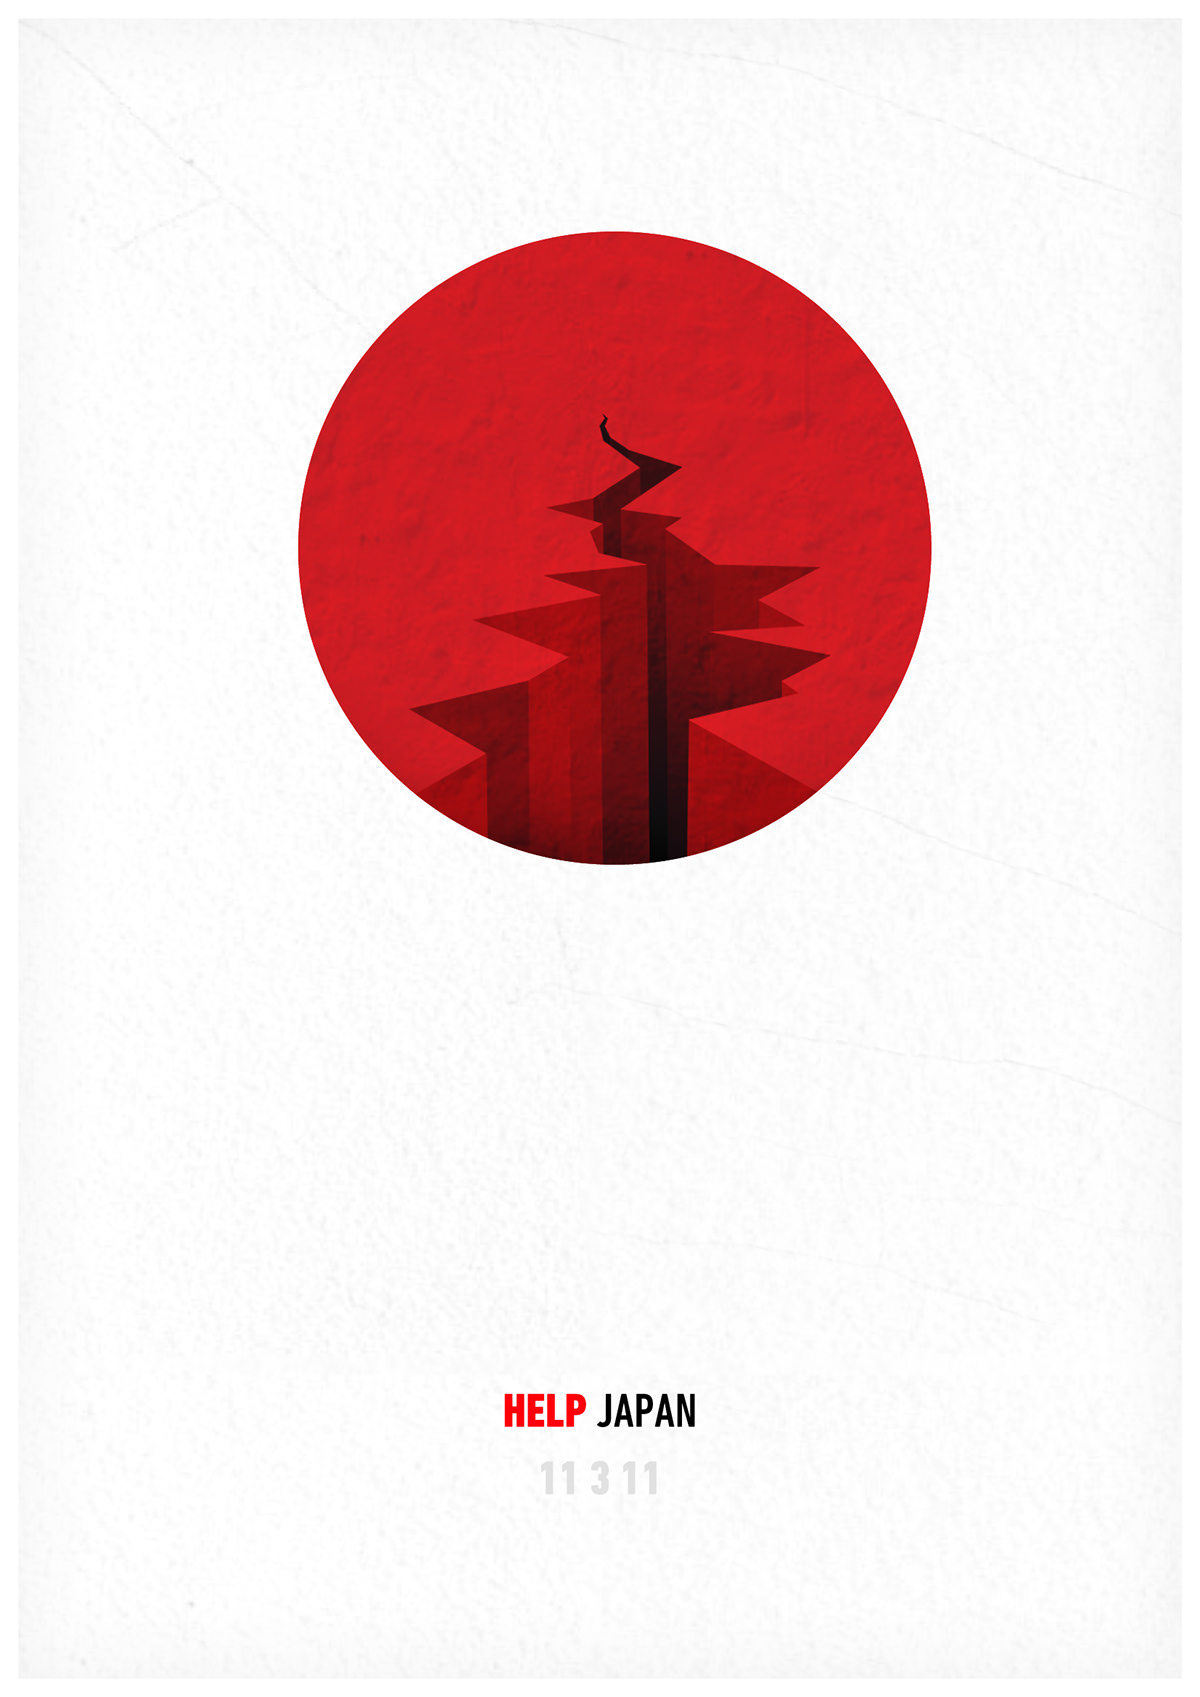 help japan hope earthqueake red poster